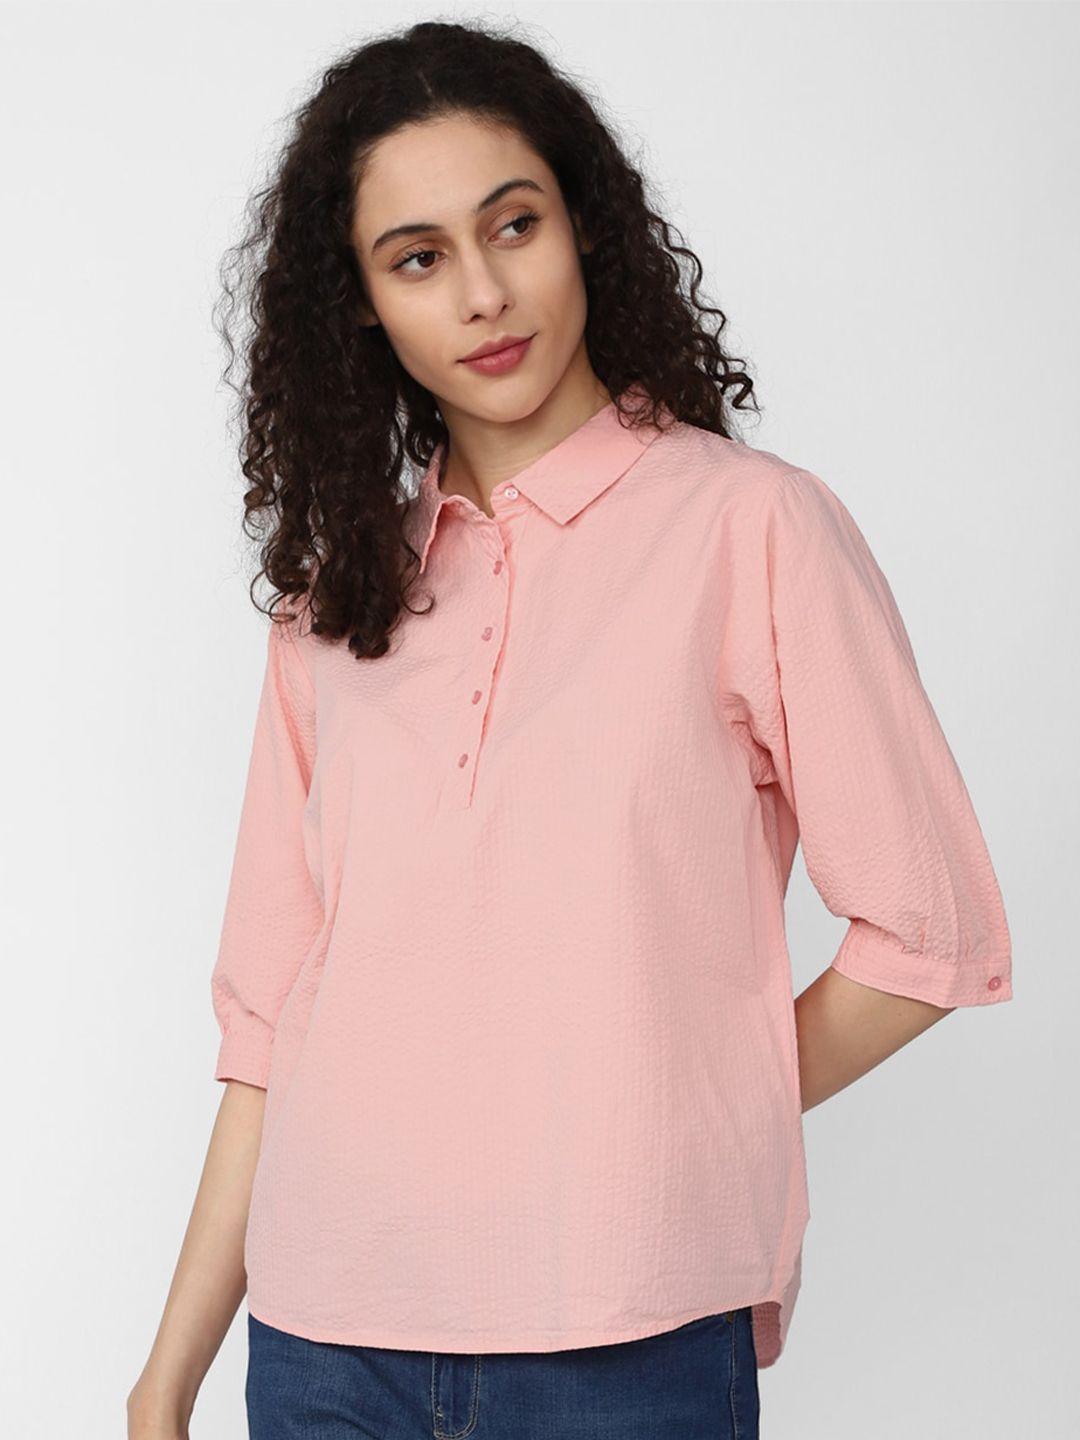 Van Heusen Woman Self Design Spread Collar Opaque Pure Cotton Casual Shirt